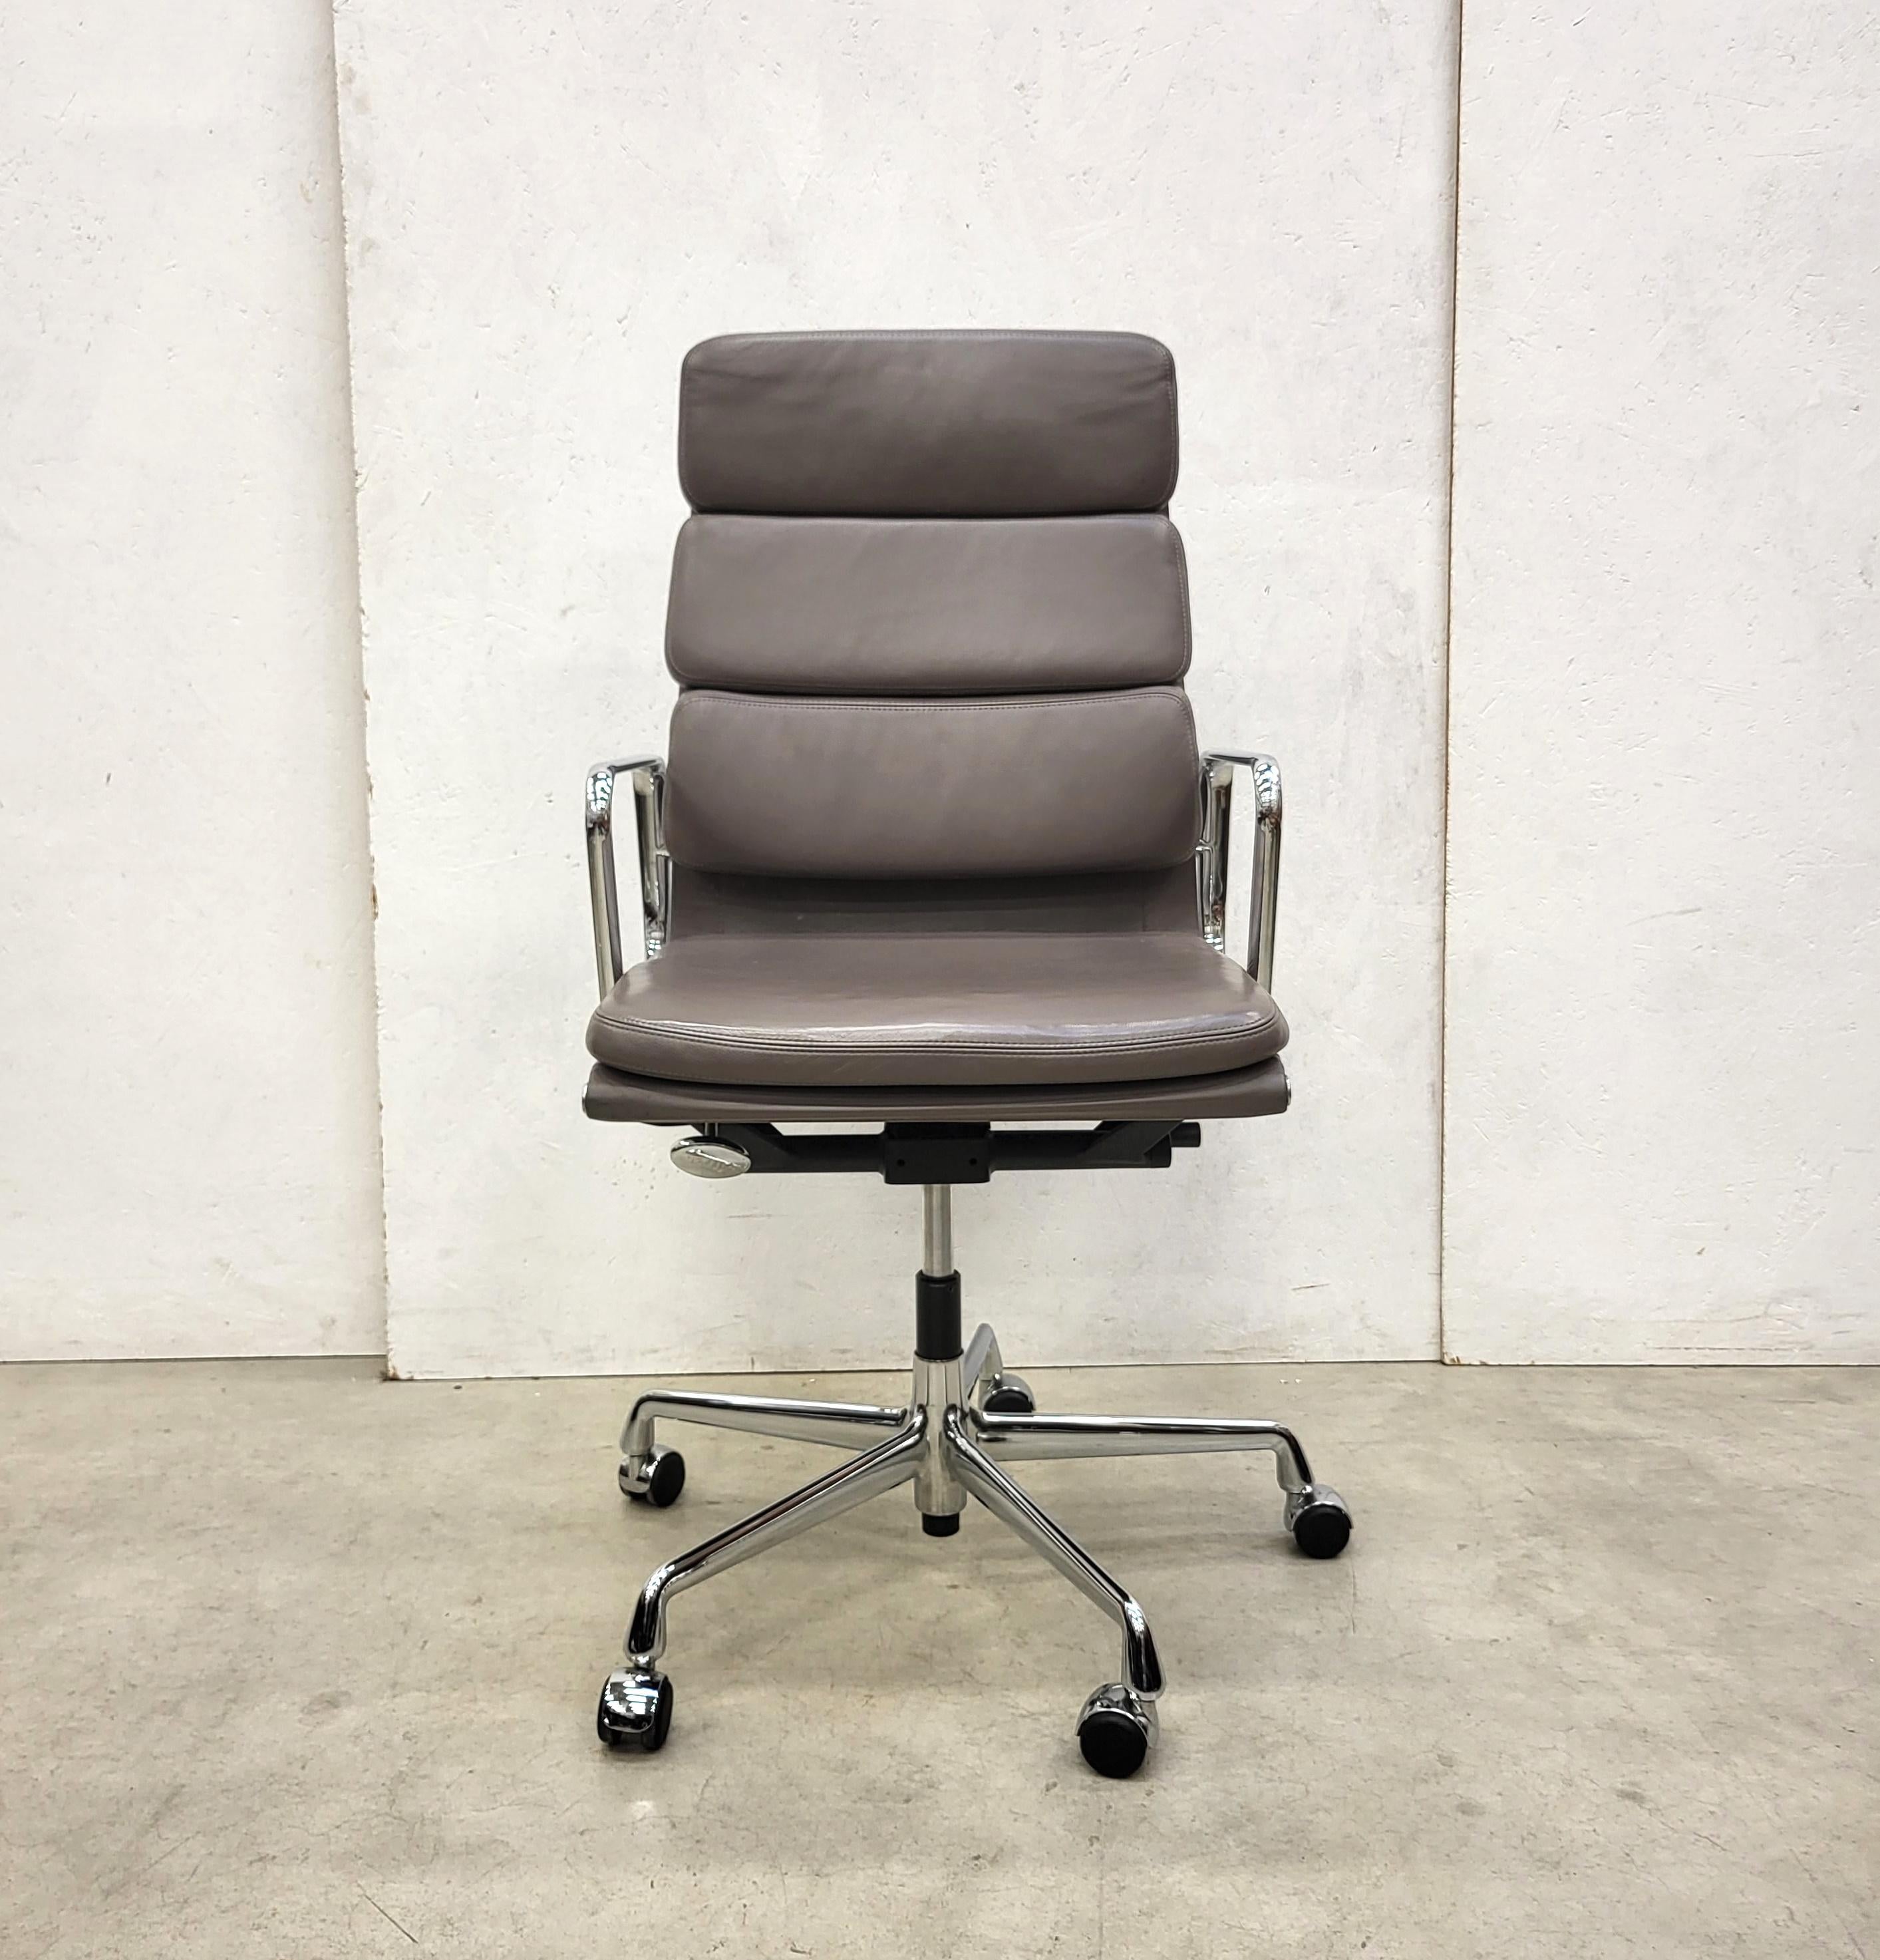 Sehr schöner Bürostuhl mit Softpad, Modell EA219, hergestellt von Vitra. 
Der Stuhl hat einen verchromten Aluminiumrahmen und wurde 2012 hergestellt.

Der Stuhl ist höhenverstellbar und hat einen Kippmechanismus, beides funktioniert sehr gut.

Er